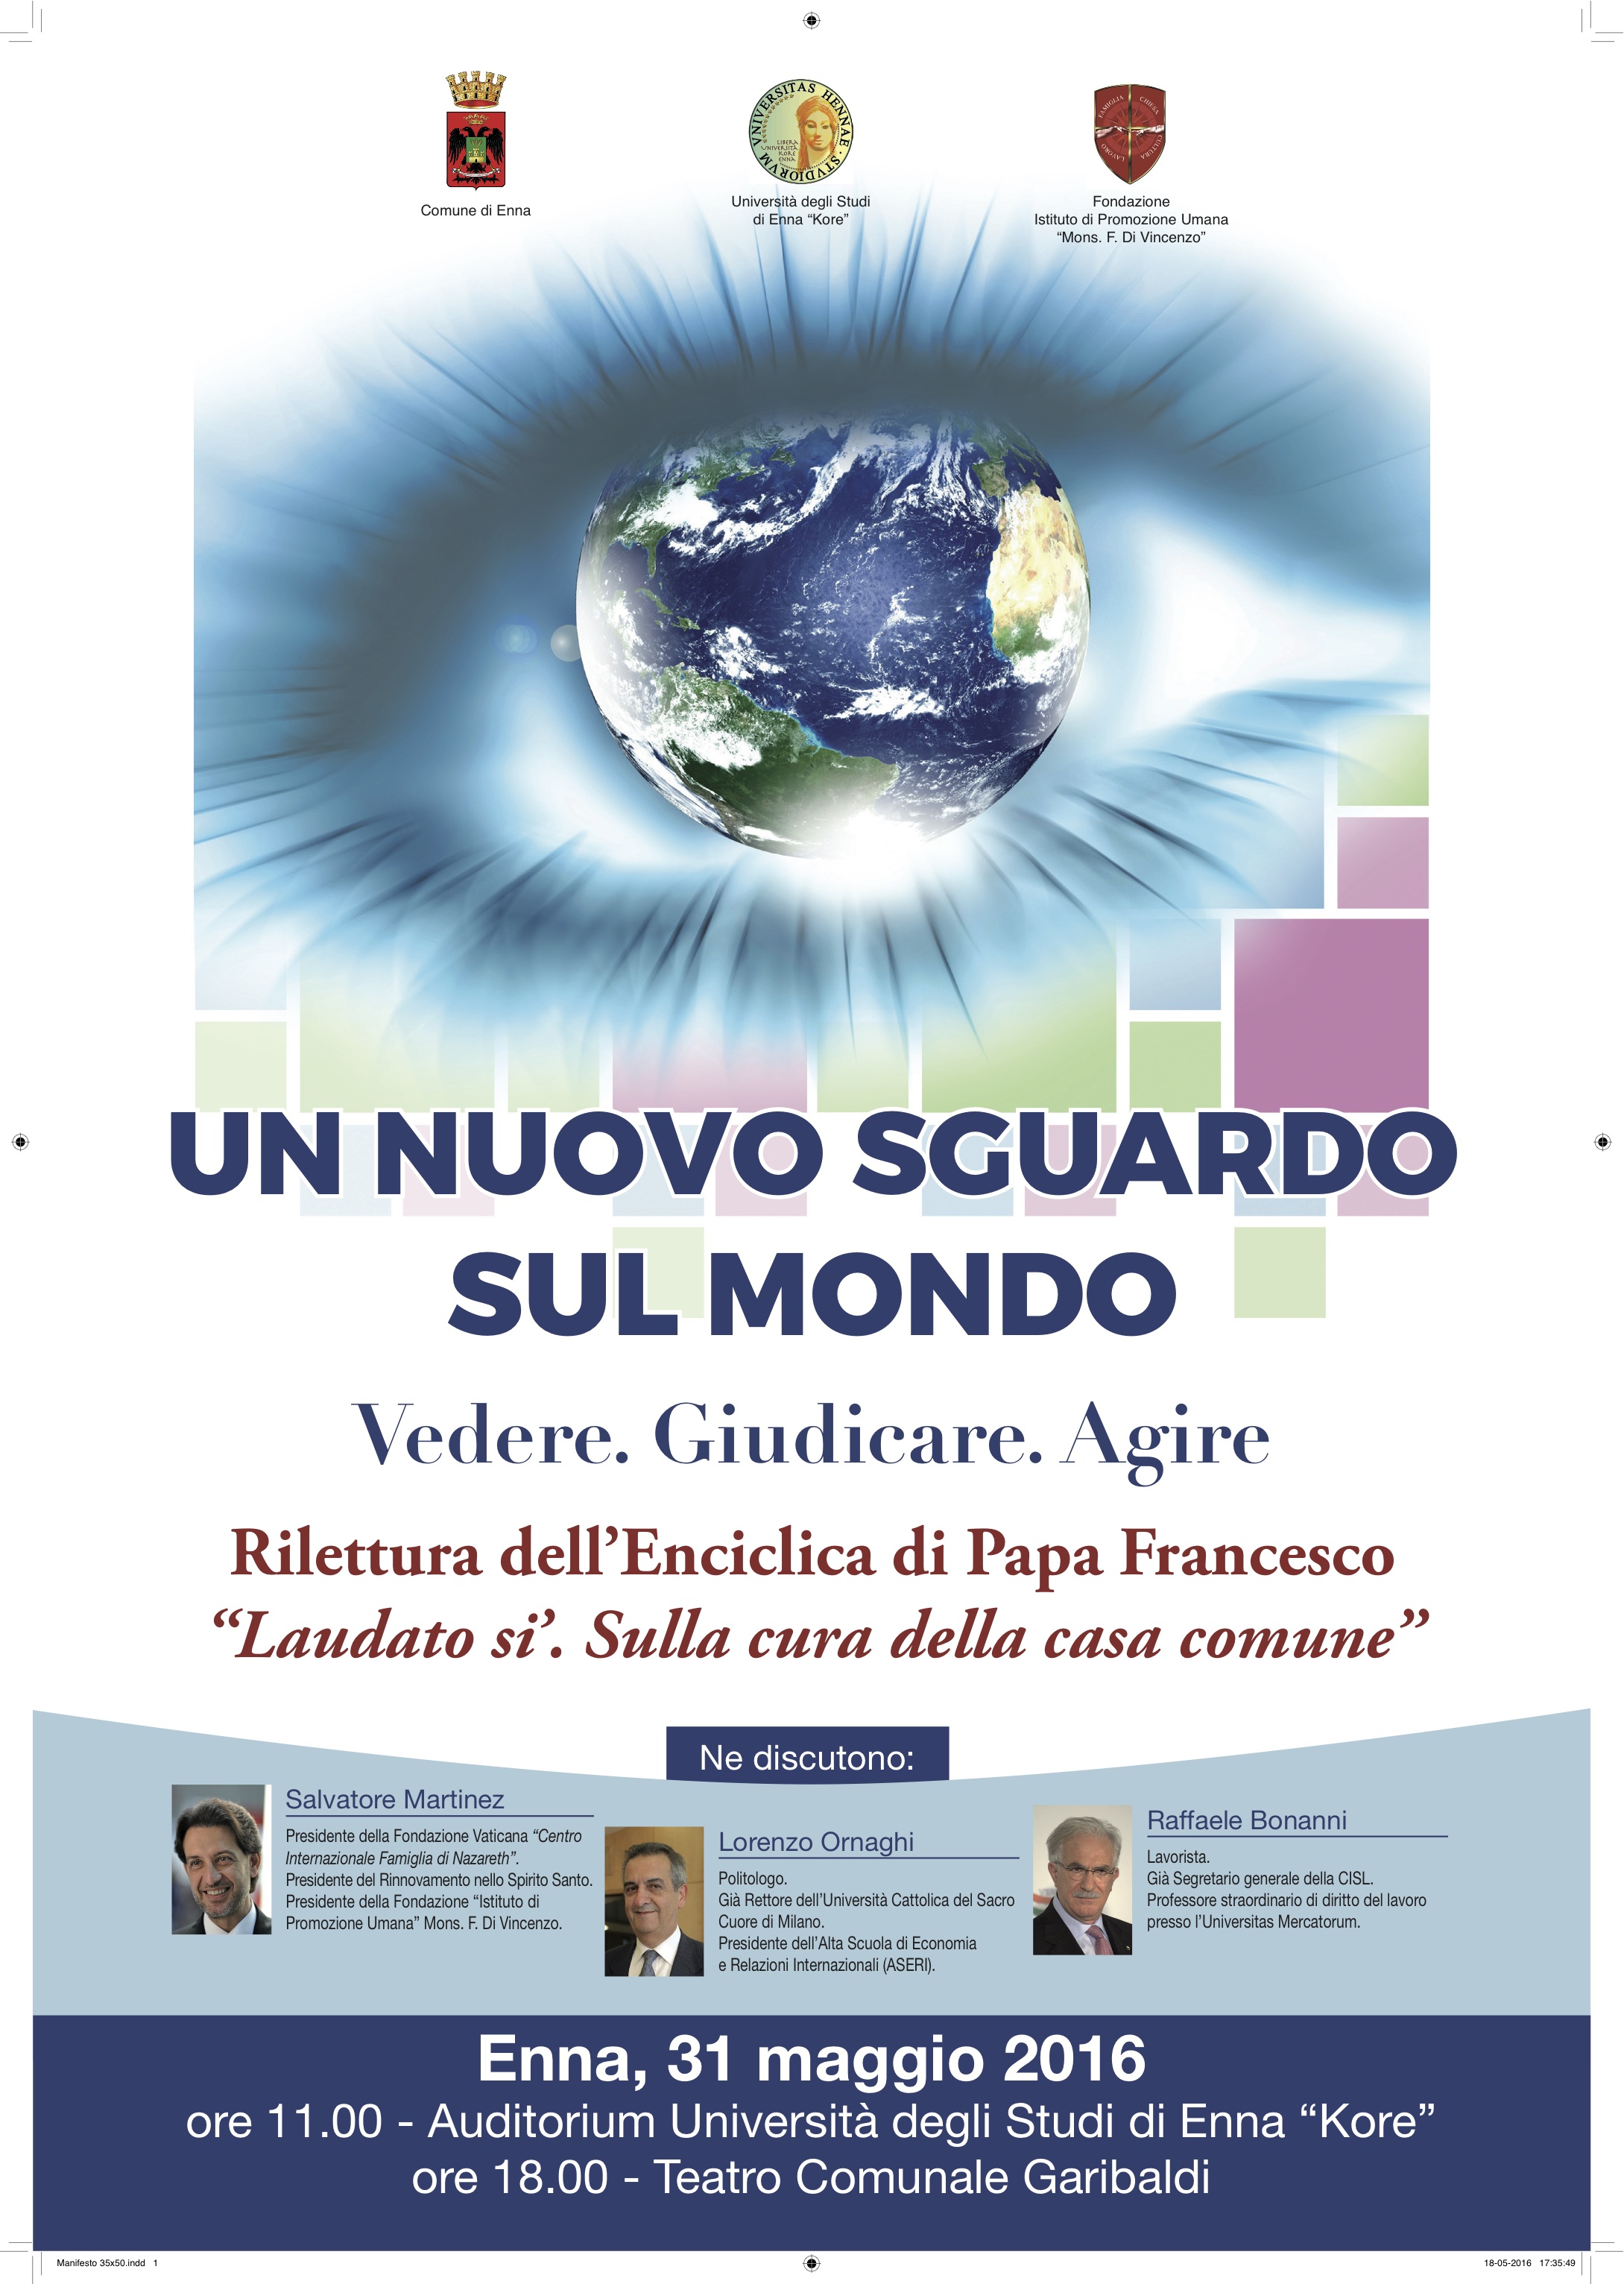  Un nuovo sguardo sul mondo, rilettura Enciclica Laudato si’, ne discutono Salvatore Martinez, Lorenzo Ornaghi e Raffaele Bonanni